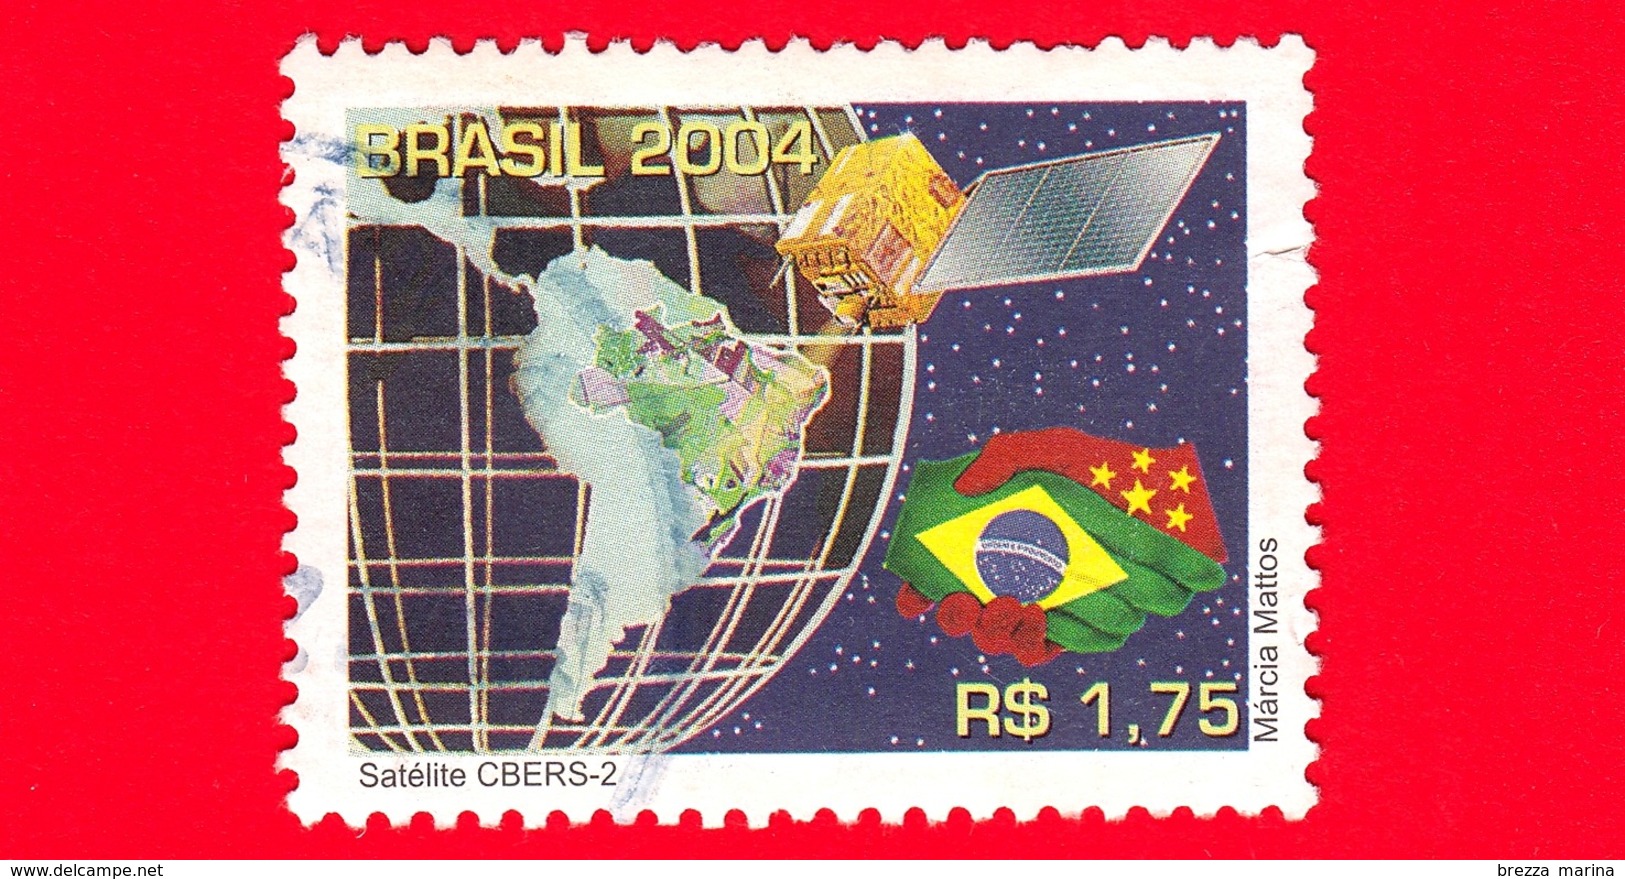 BRASILE - Usato - 2004 - CBERS-2 Satellite - 1.75 - Gebraucht